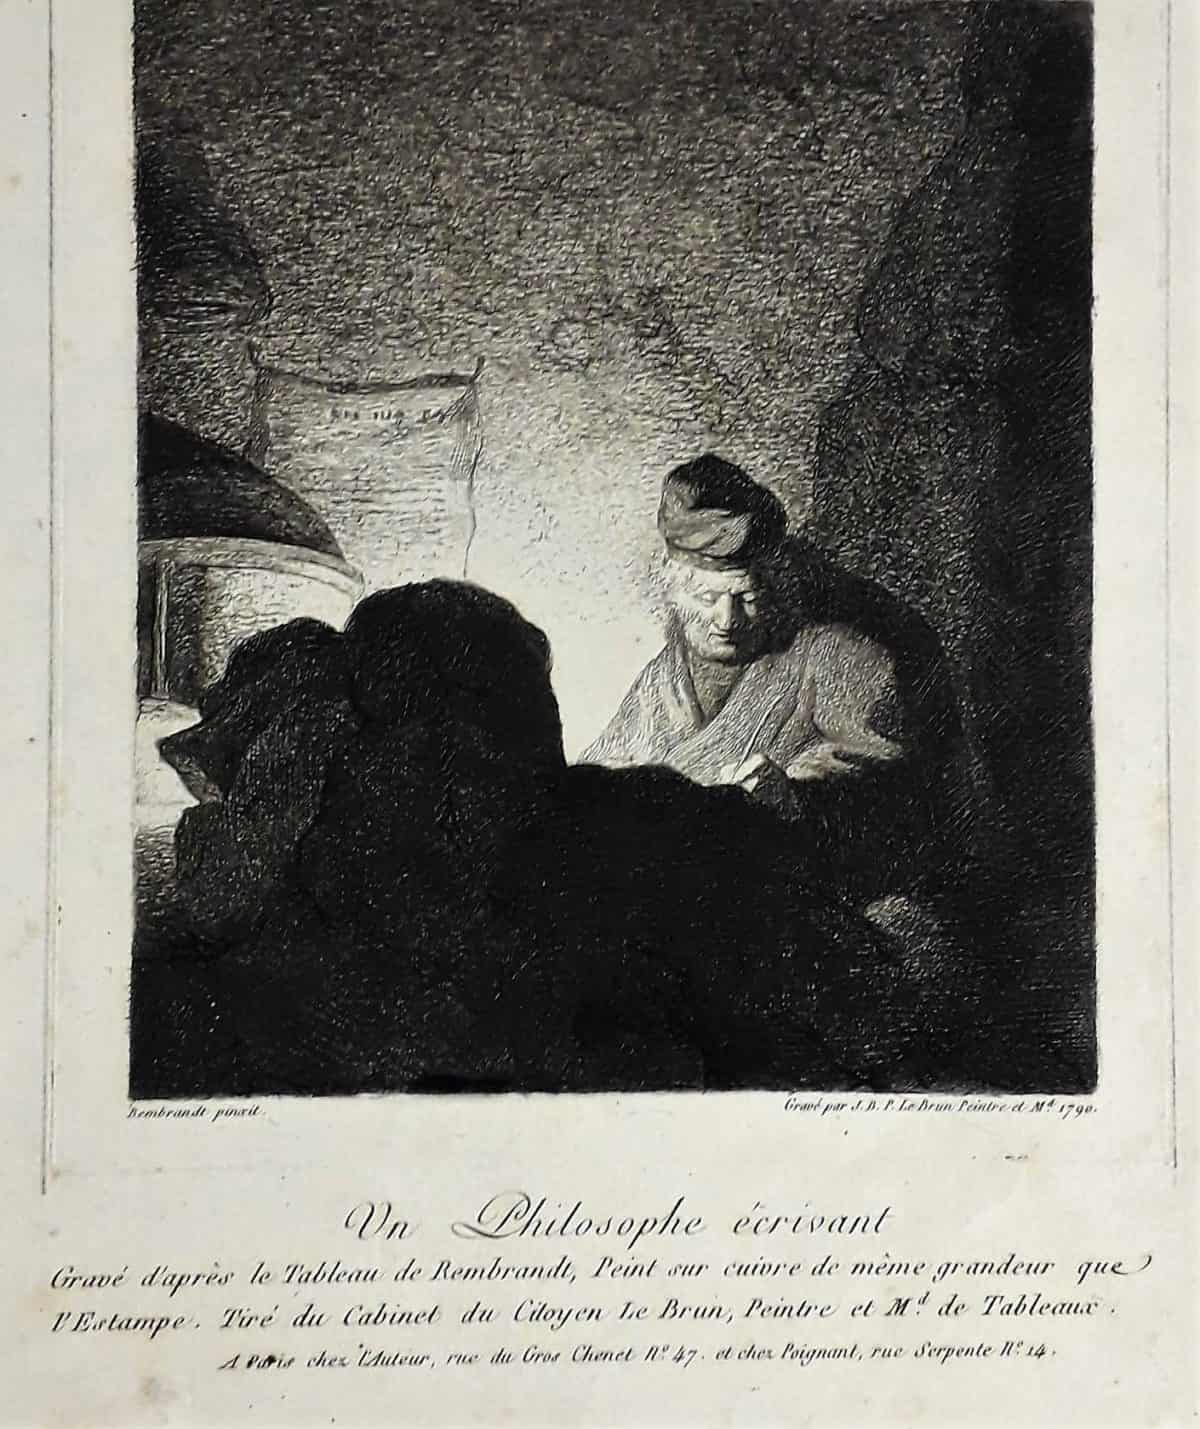 Master 21 NO NUMBER - LE BRUN, J.B.P. (artrist Rembrandt) - Un Philosophe Scrivant